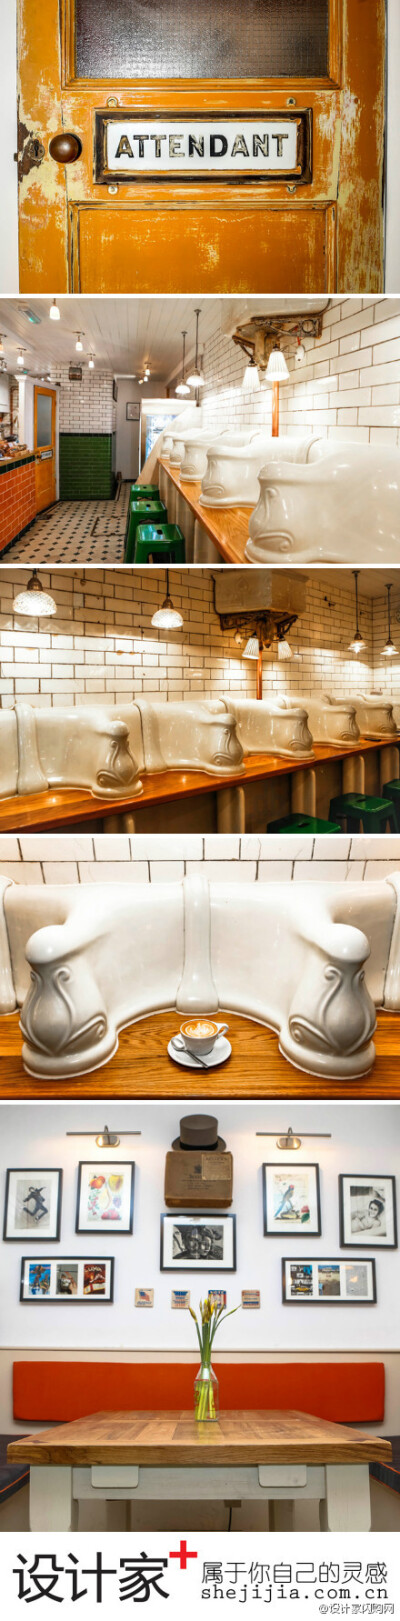 #设计家去旅行#【The Attendant Cafe】1980年代的公厕，摇身一变，成为古色古香带有维多利亚时期装潢的咖啡馆。